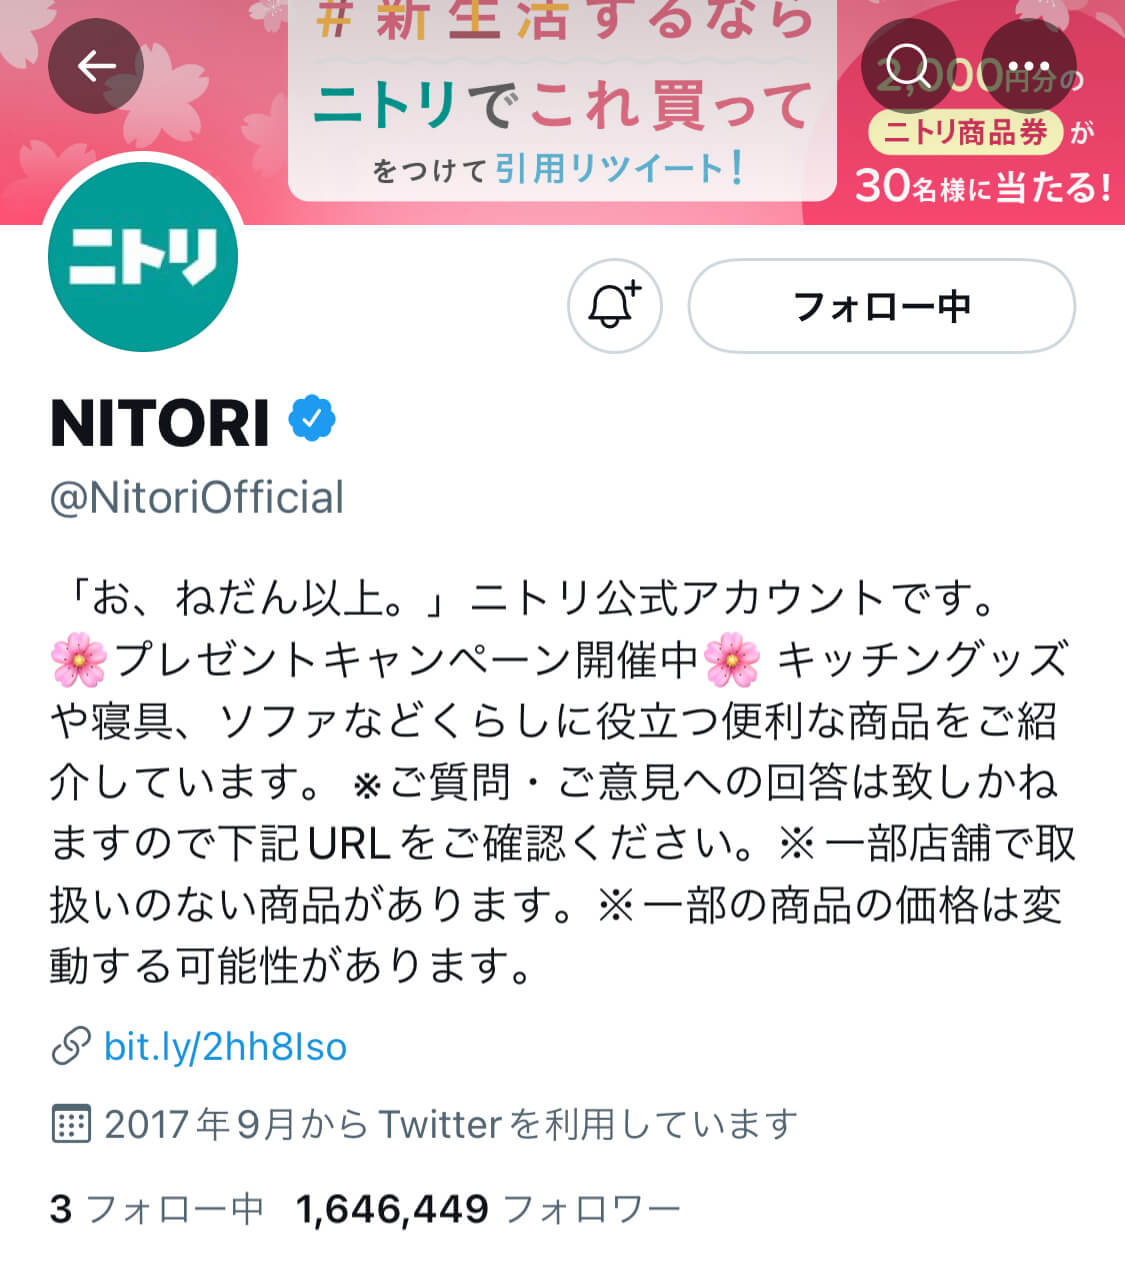 nitori-twitter-top